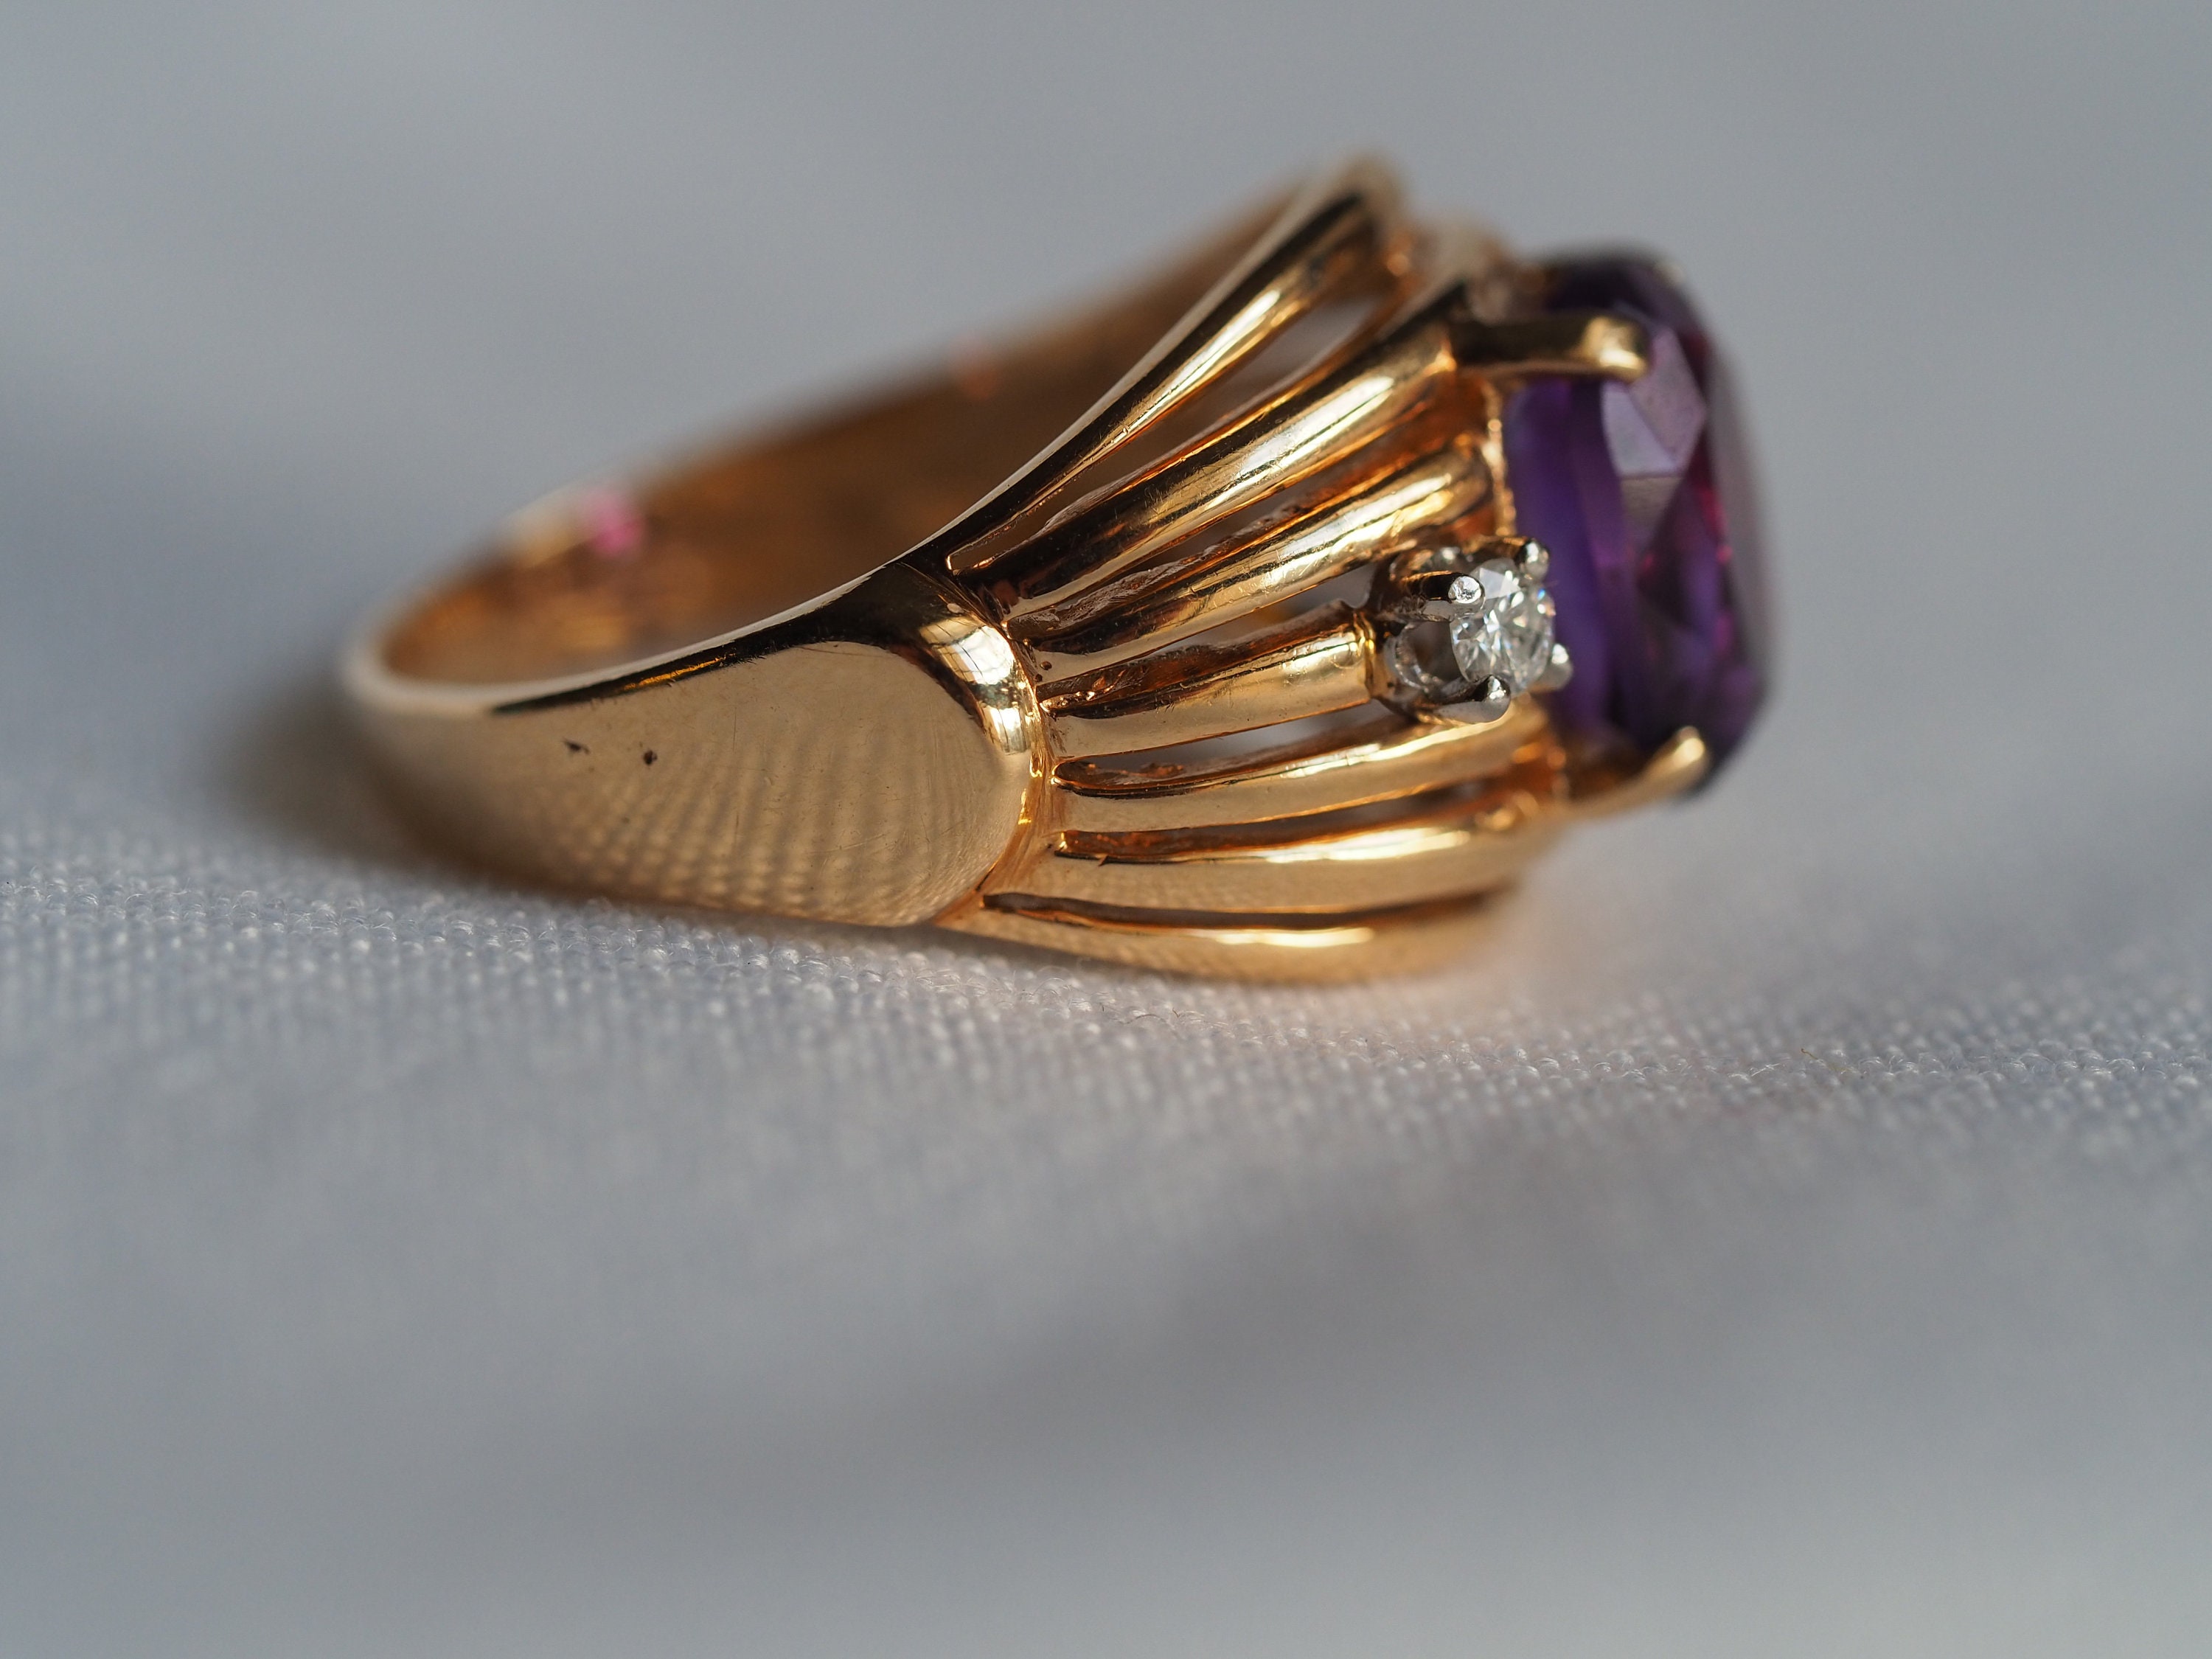 Stunning vintage BIRKS 18K gold dinner ring with large | Etsy